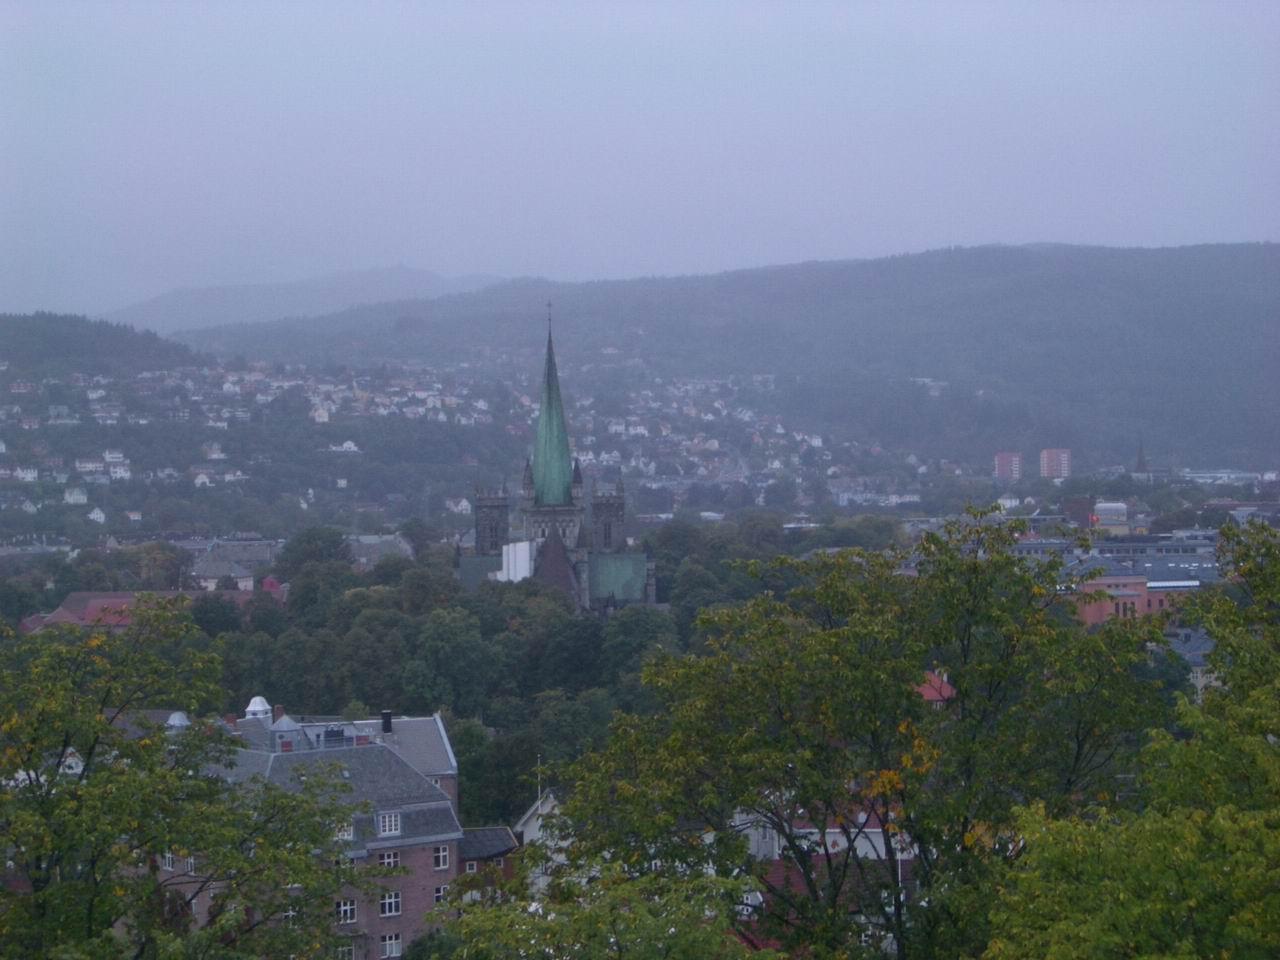 TrondheimCathedral.jpg